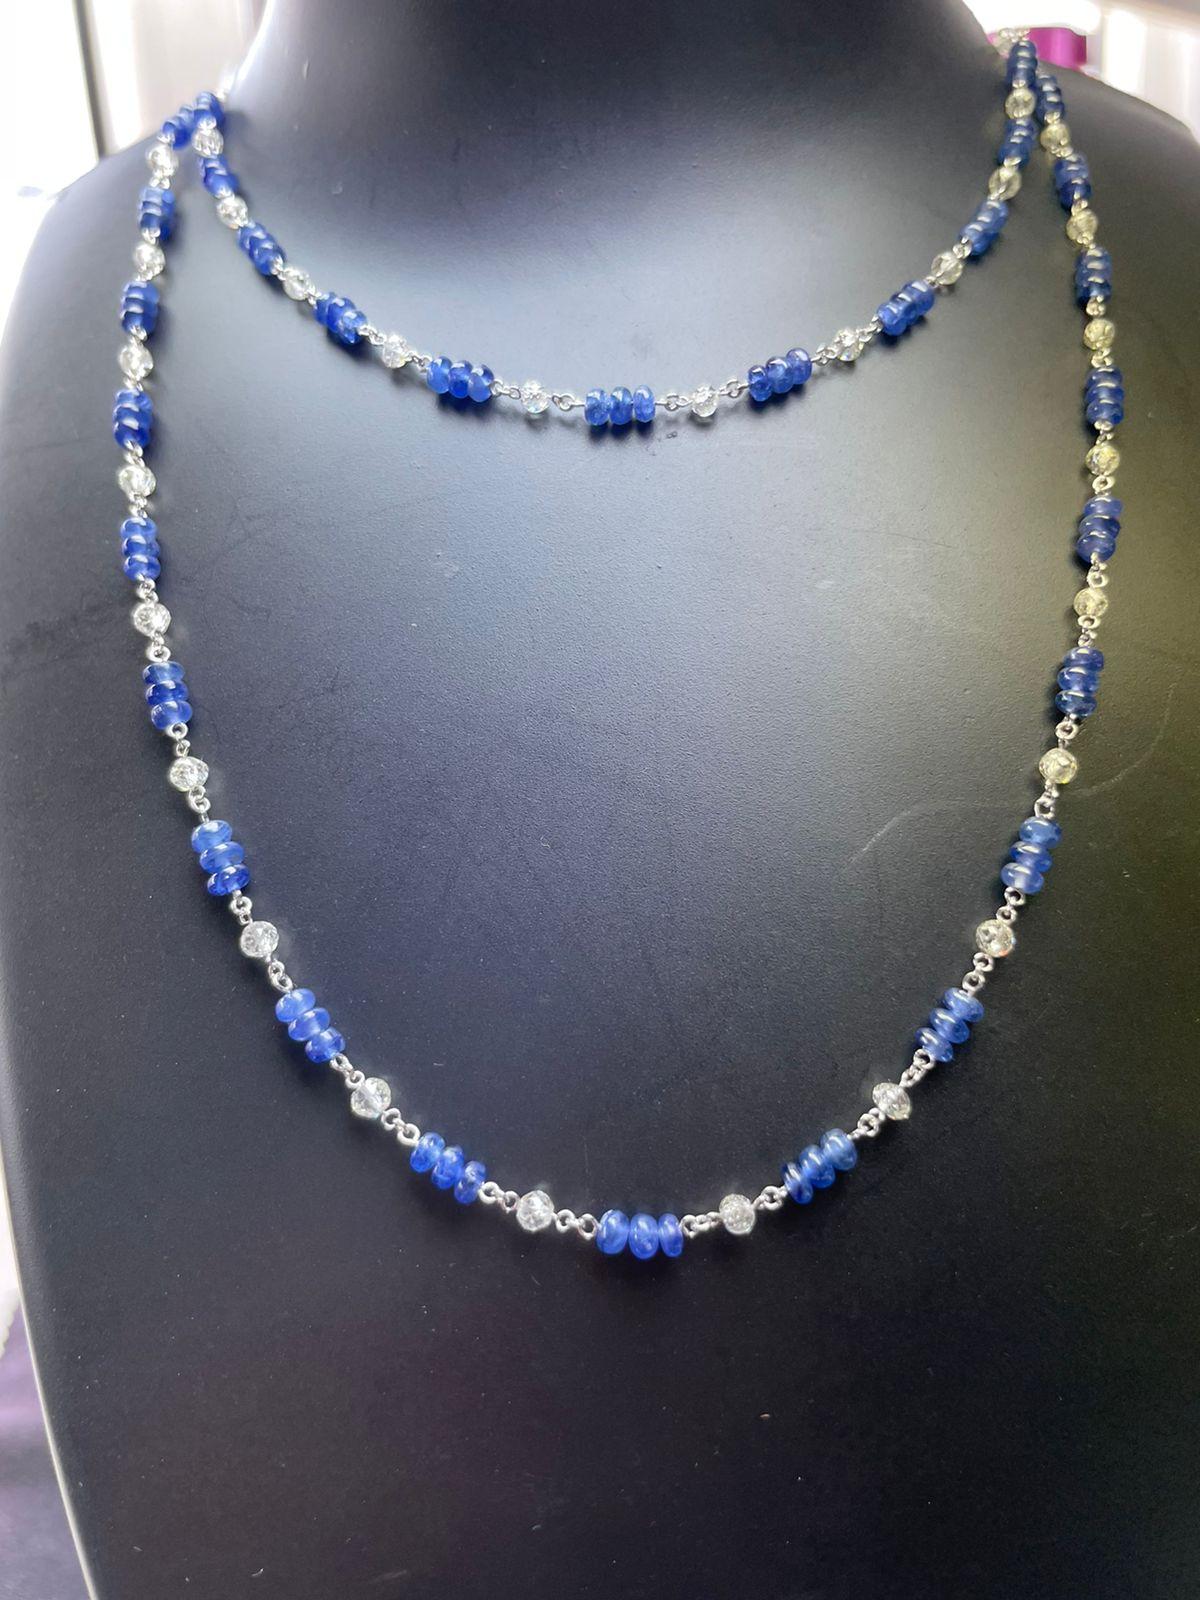 PANIM Collier en or blanc 18 carats avec perles de diamant et saphir

Des perles de diamant et des saphirs bleus naturels sont utilisés pour embellir un collier délicat ,le tout s'écoulant de manière fluide les uns parmi les autres, leurs teintes se